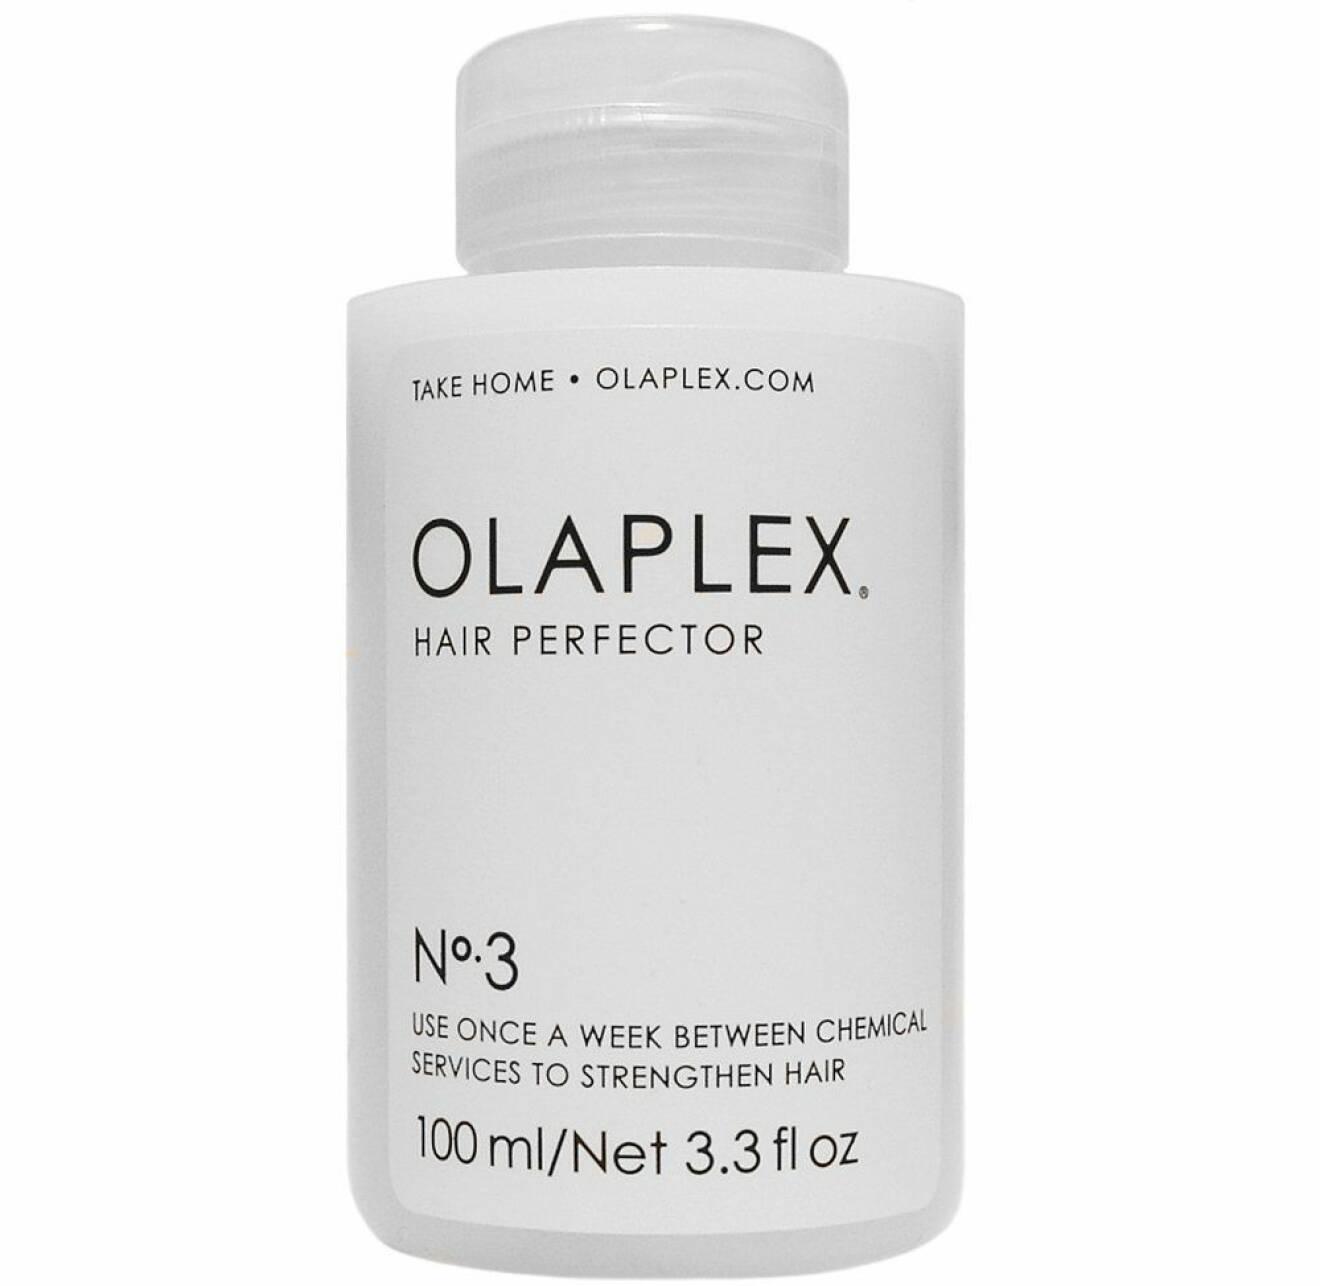 Hair perfector från Olaplex.